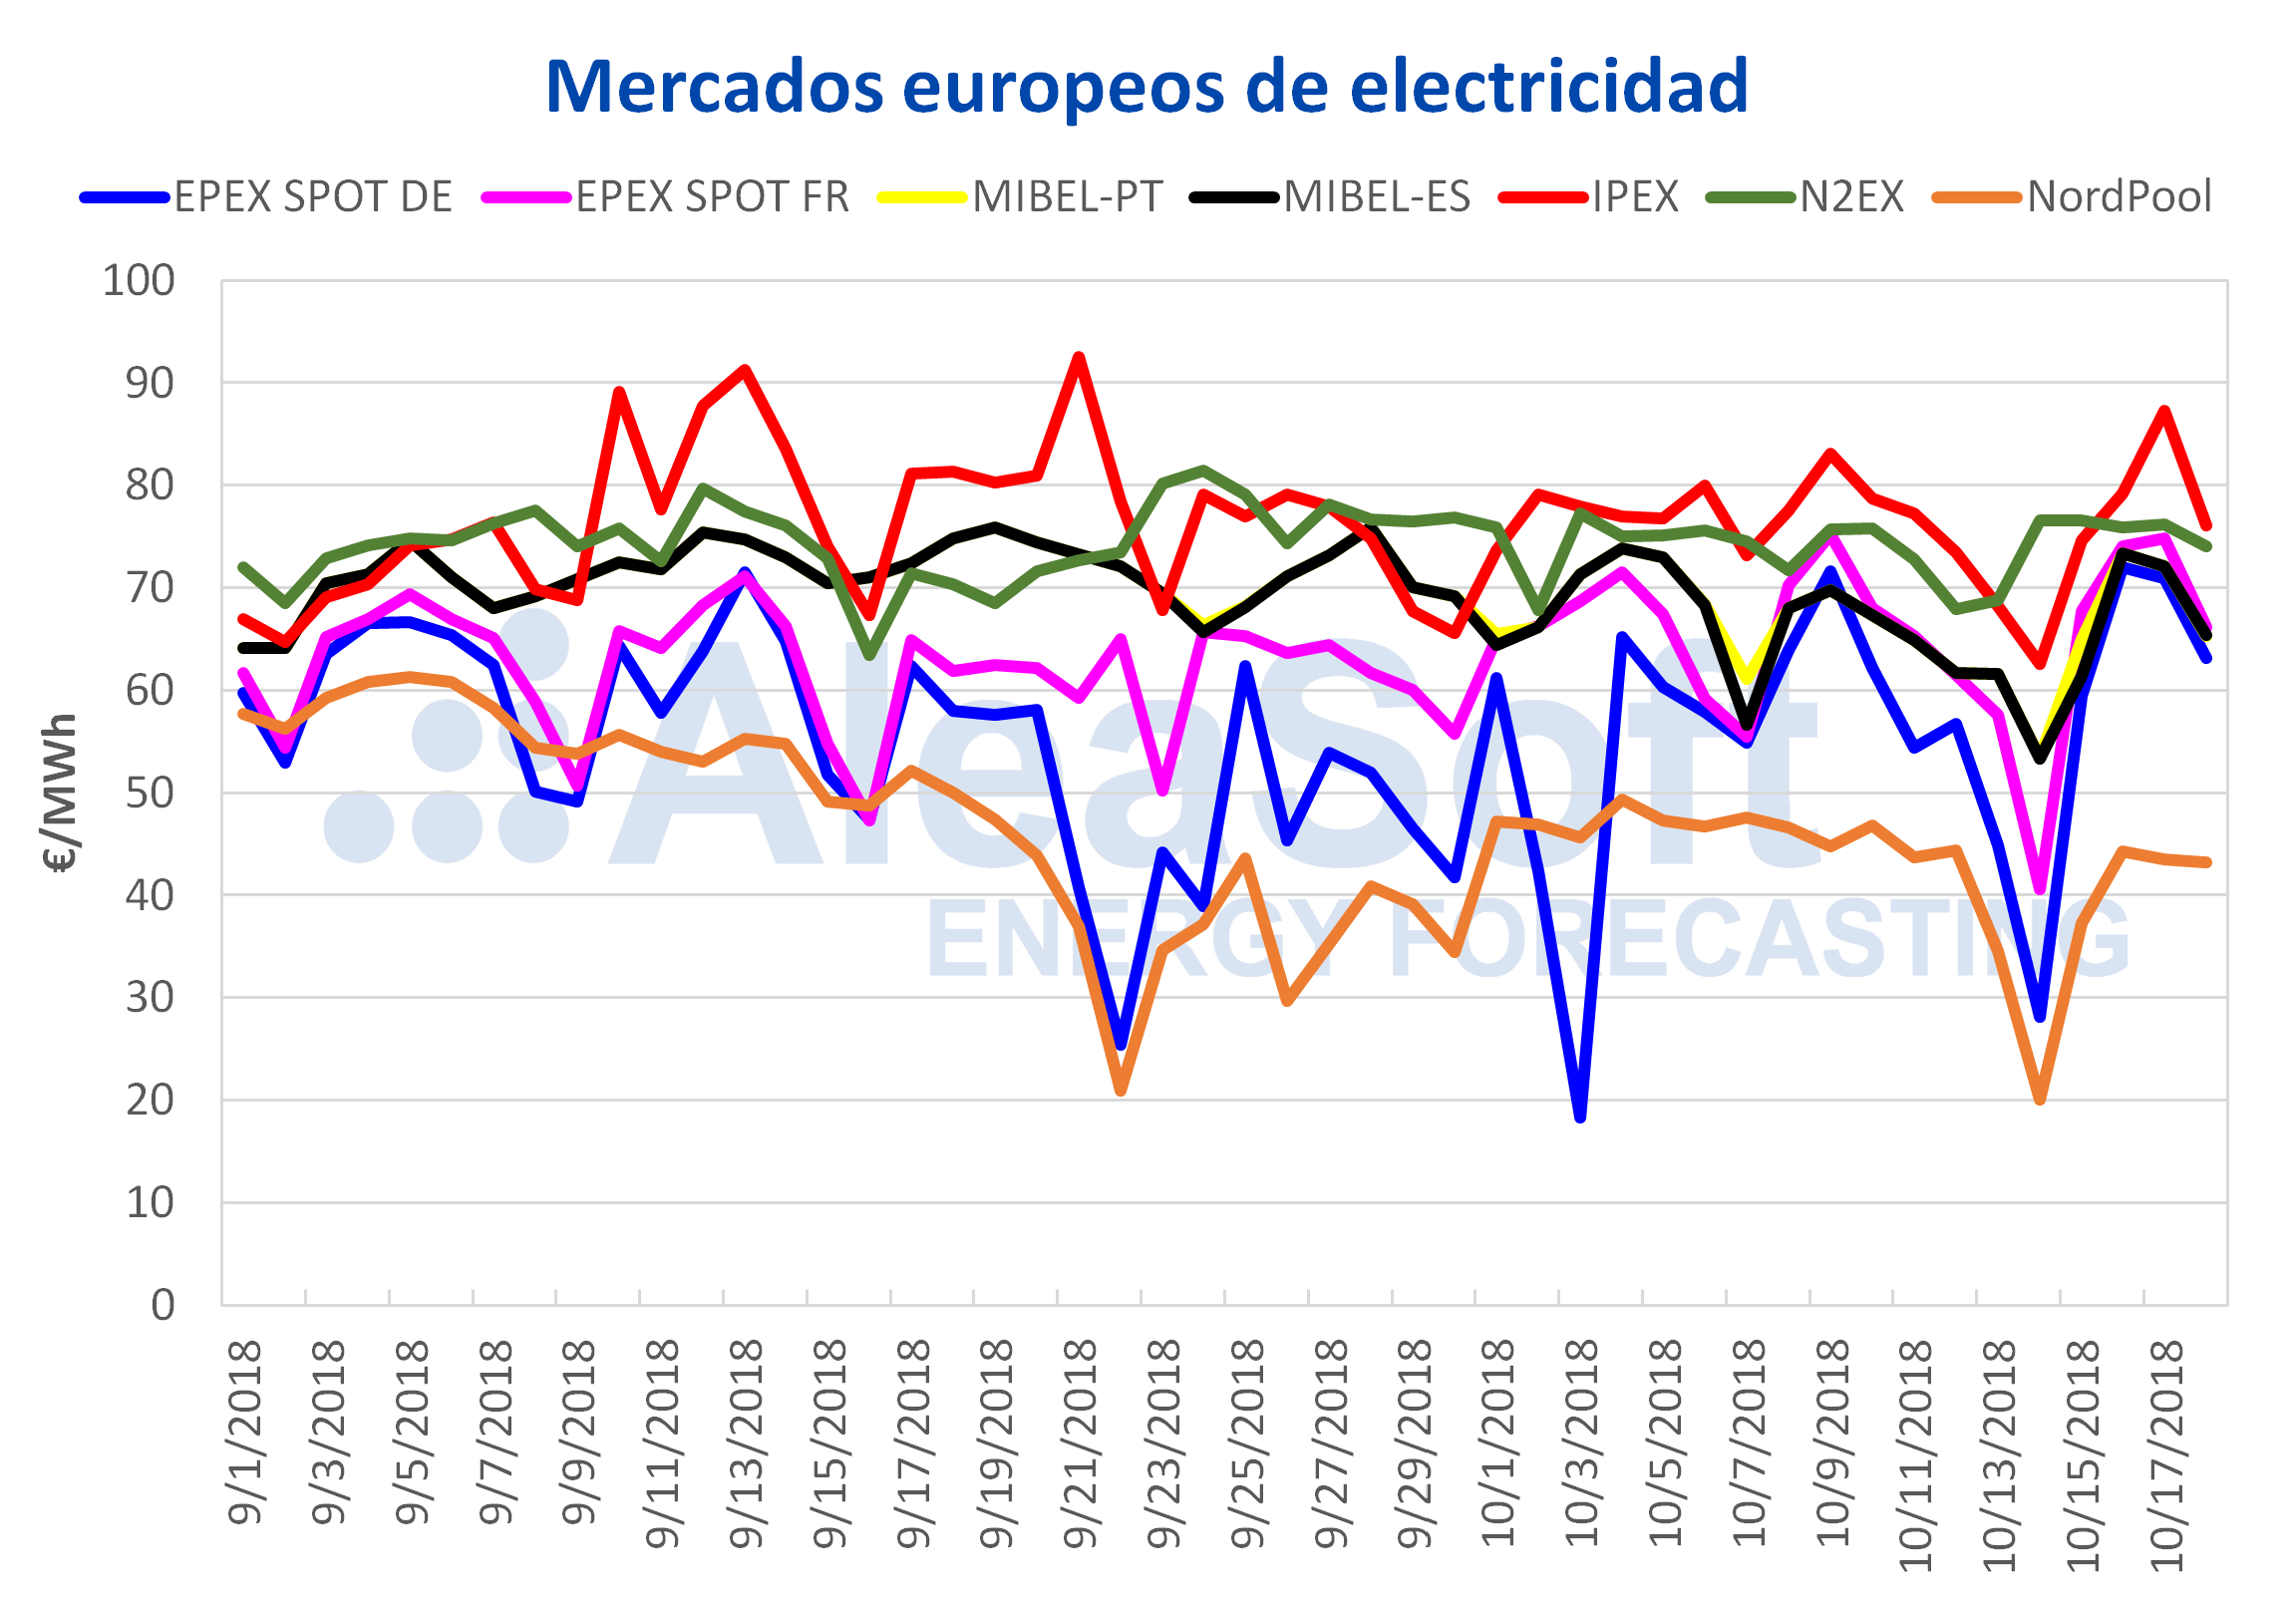 AleaSoft - Precios mercados electricidad europeos